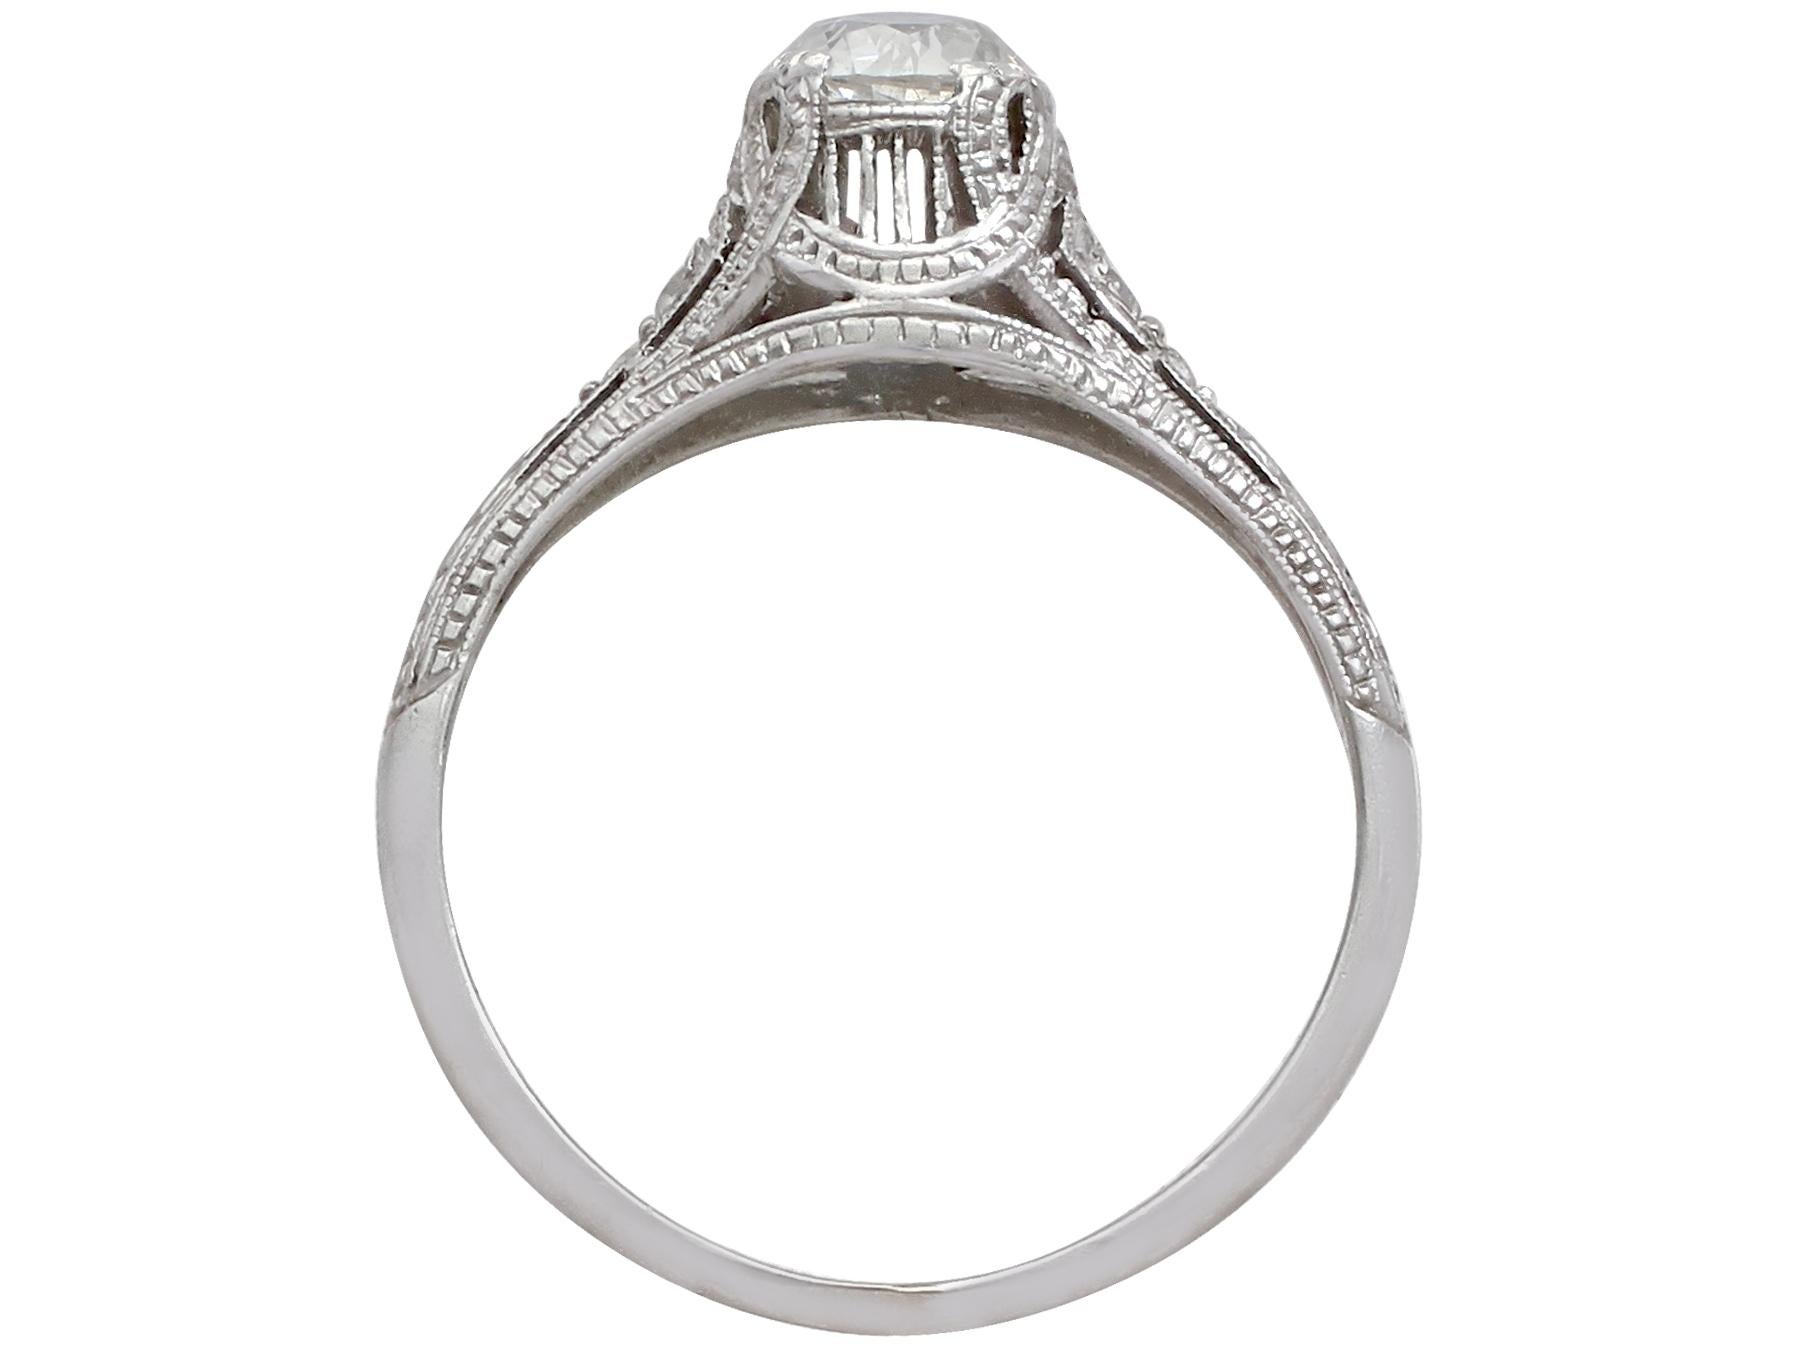 Women's Antique Diamond and Platinum Solitaire Ring, circa 1915